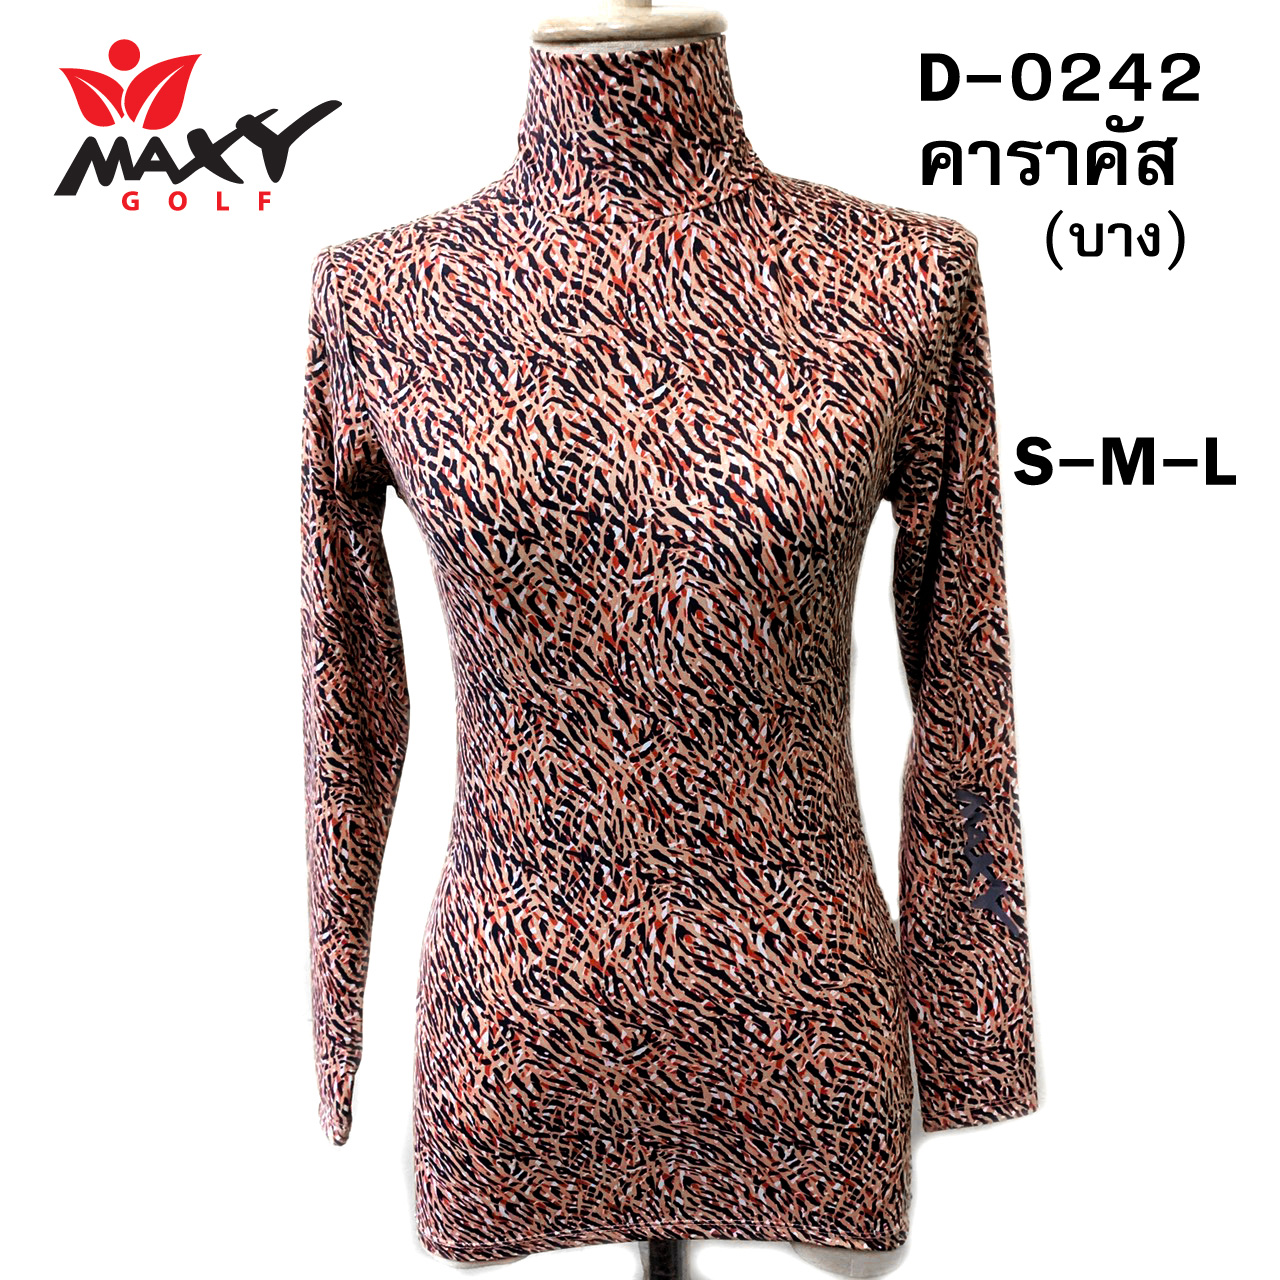 เสื้อบอดี้ฟิตกันแดด(คอเต่า)สำหรับผู้หญิง ยี่ห้อ MAXY GOLF (รหัส D-0242 คาราคัล)